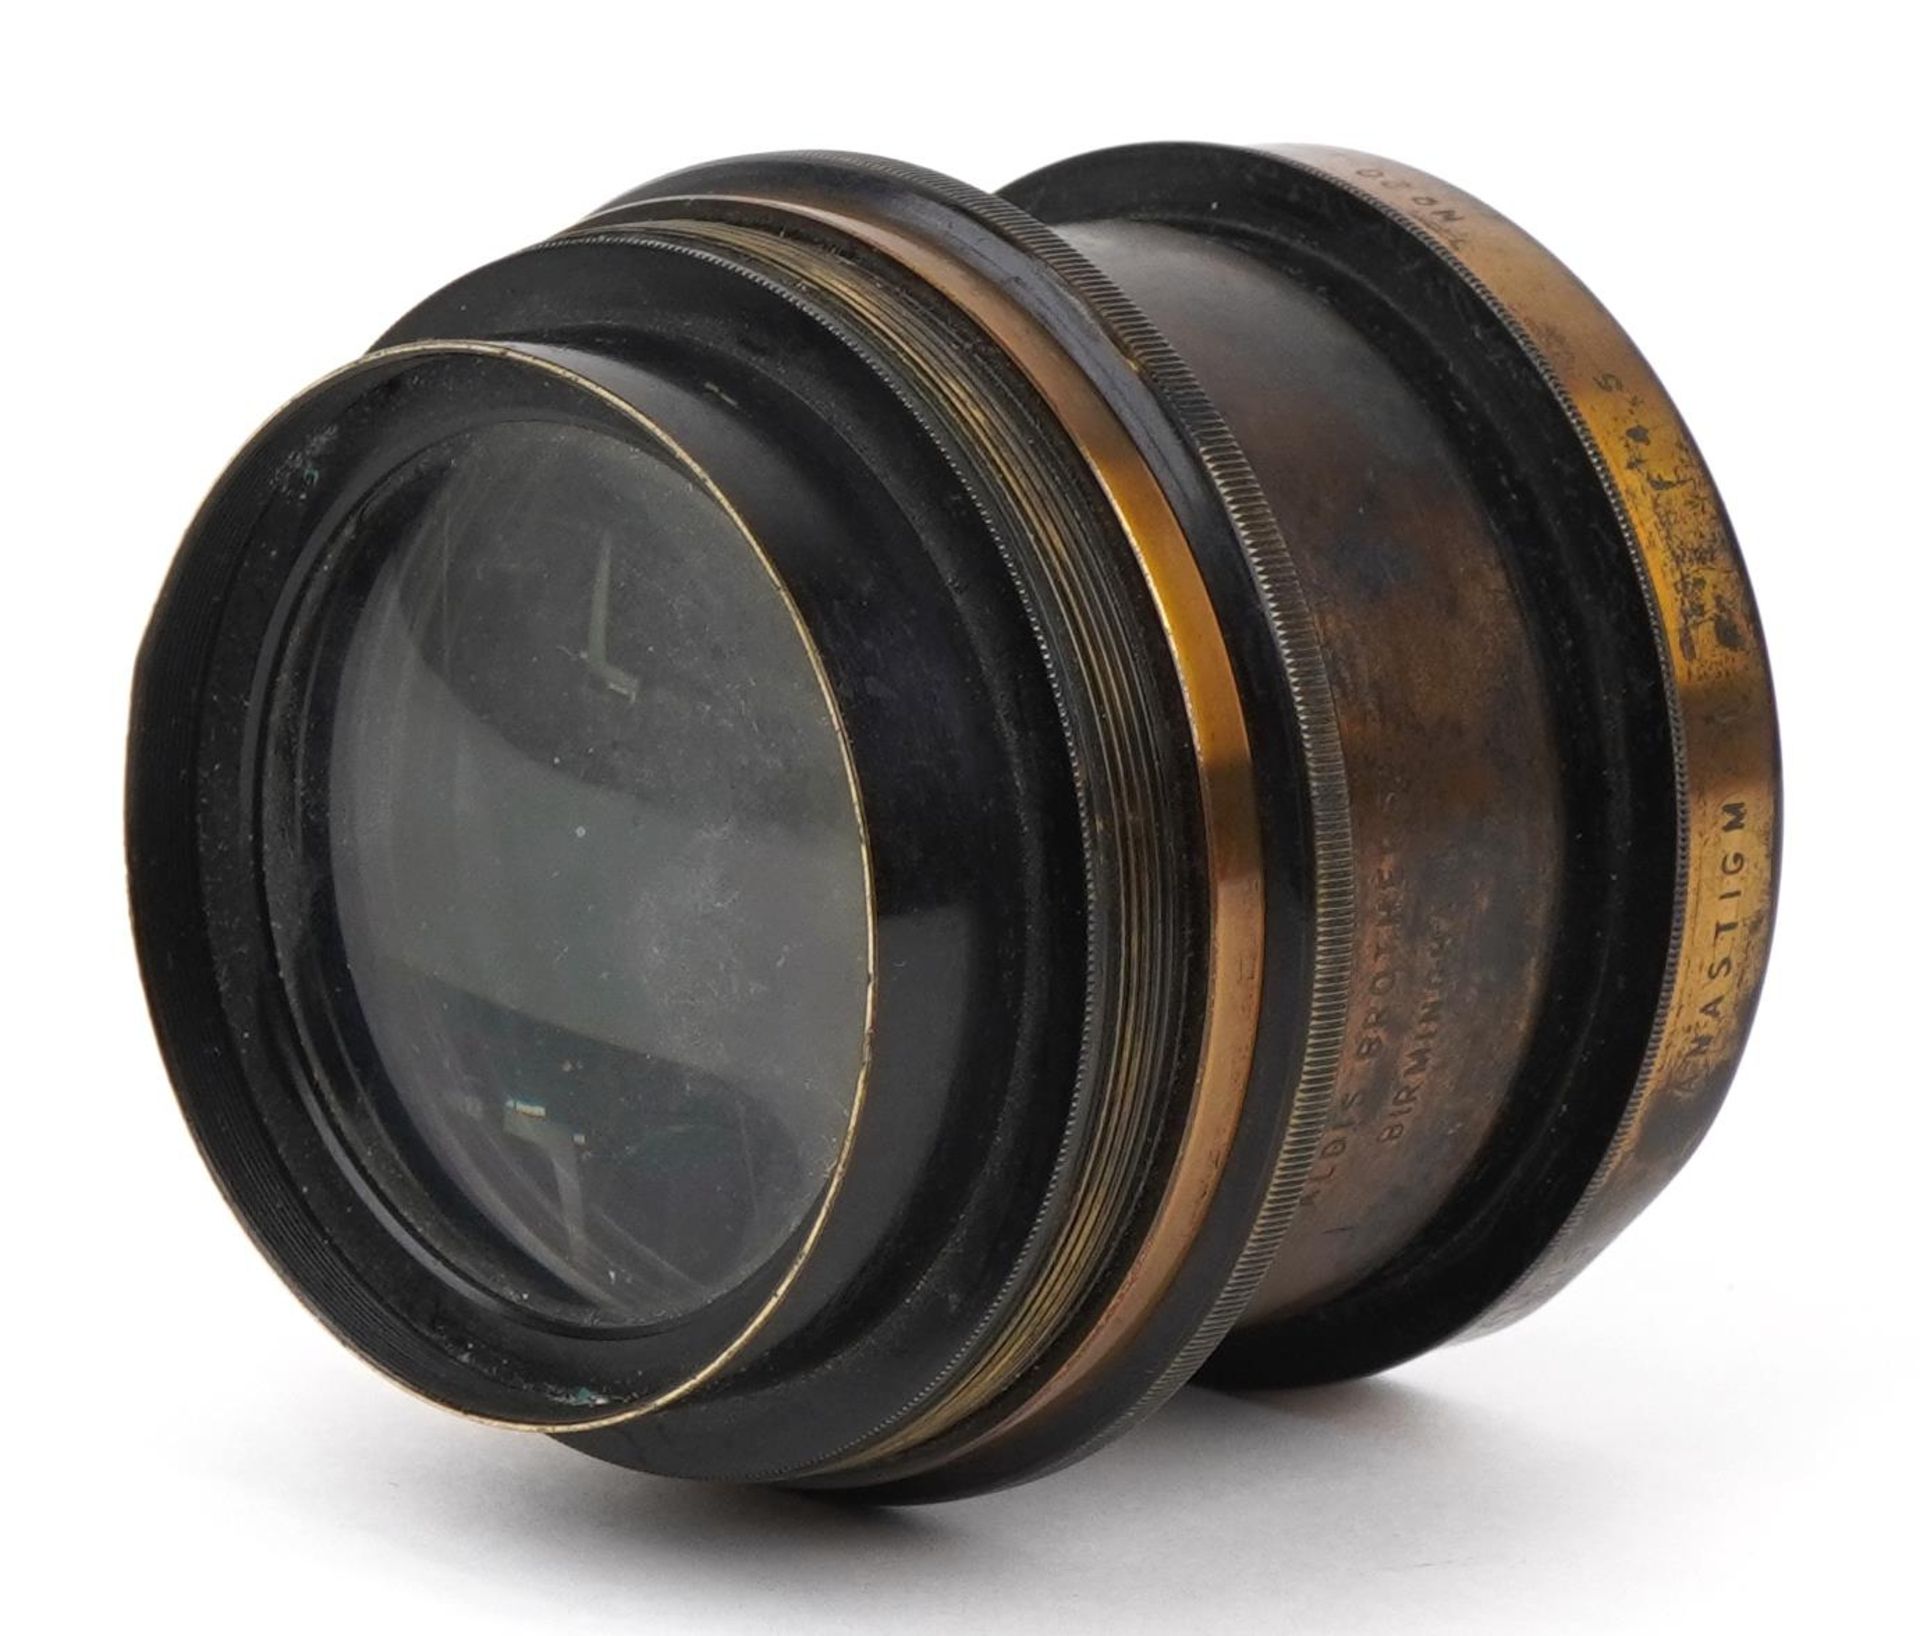 19th century Aldis Brothers of Birmingham lens, 8.5cm in diameter - Image 2 of 4